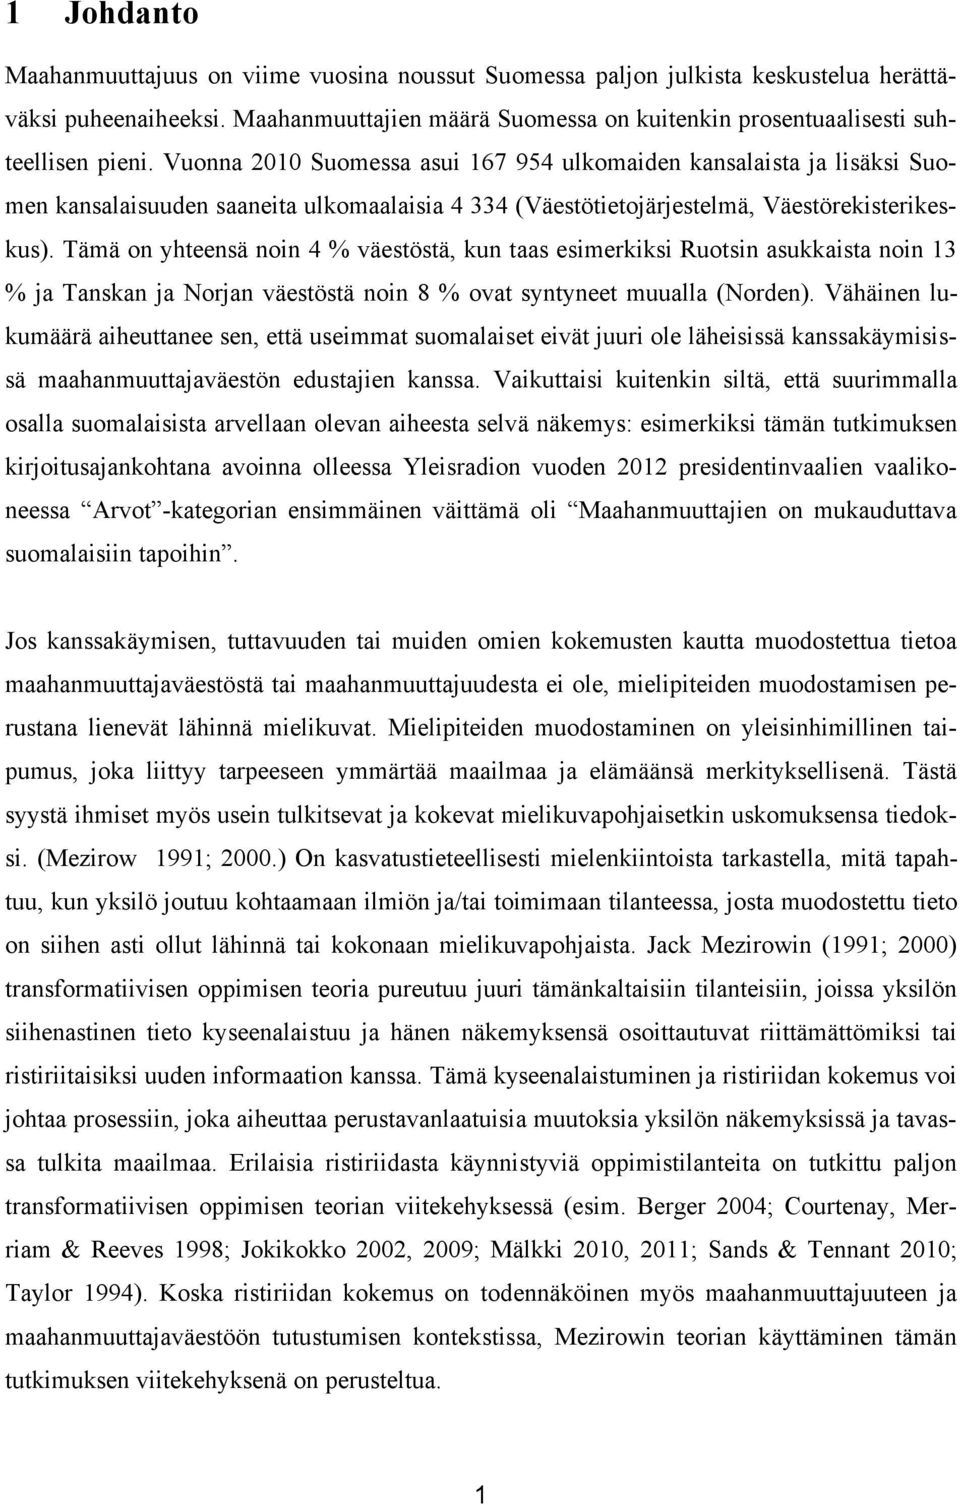 Vuonna 2010 Suomessa asui 167 954 ulkomaiden kansalaista ja lisäksi Suomen kansalaisuuden saaneita ulkomaalaisia 4 334 (Väestötietojärjestelmä, Väestörekisterikeskus).